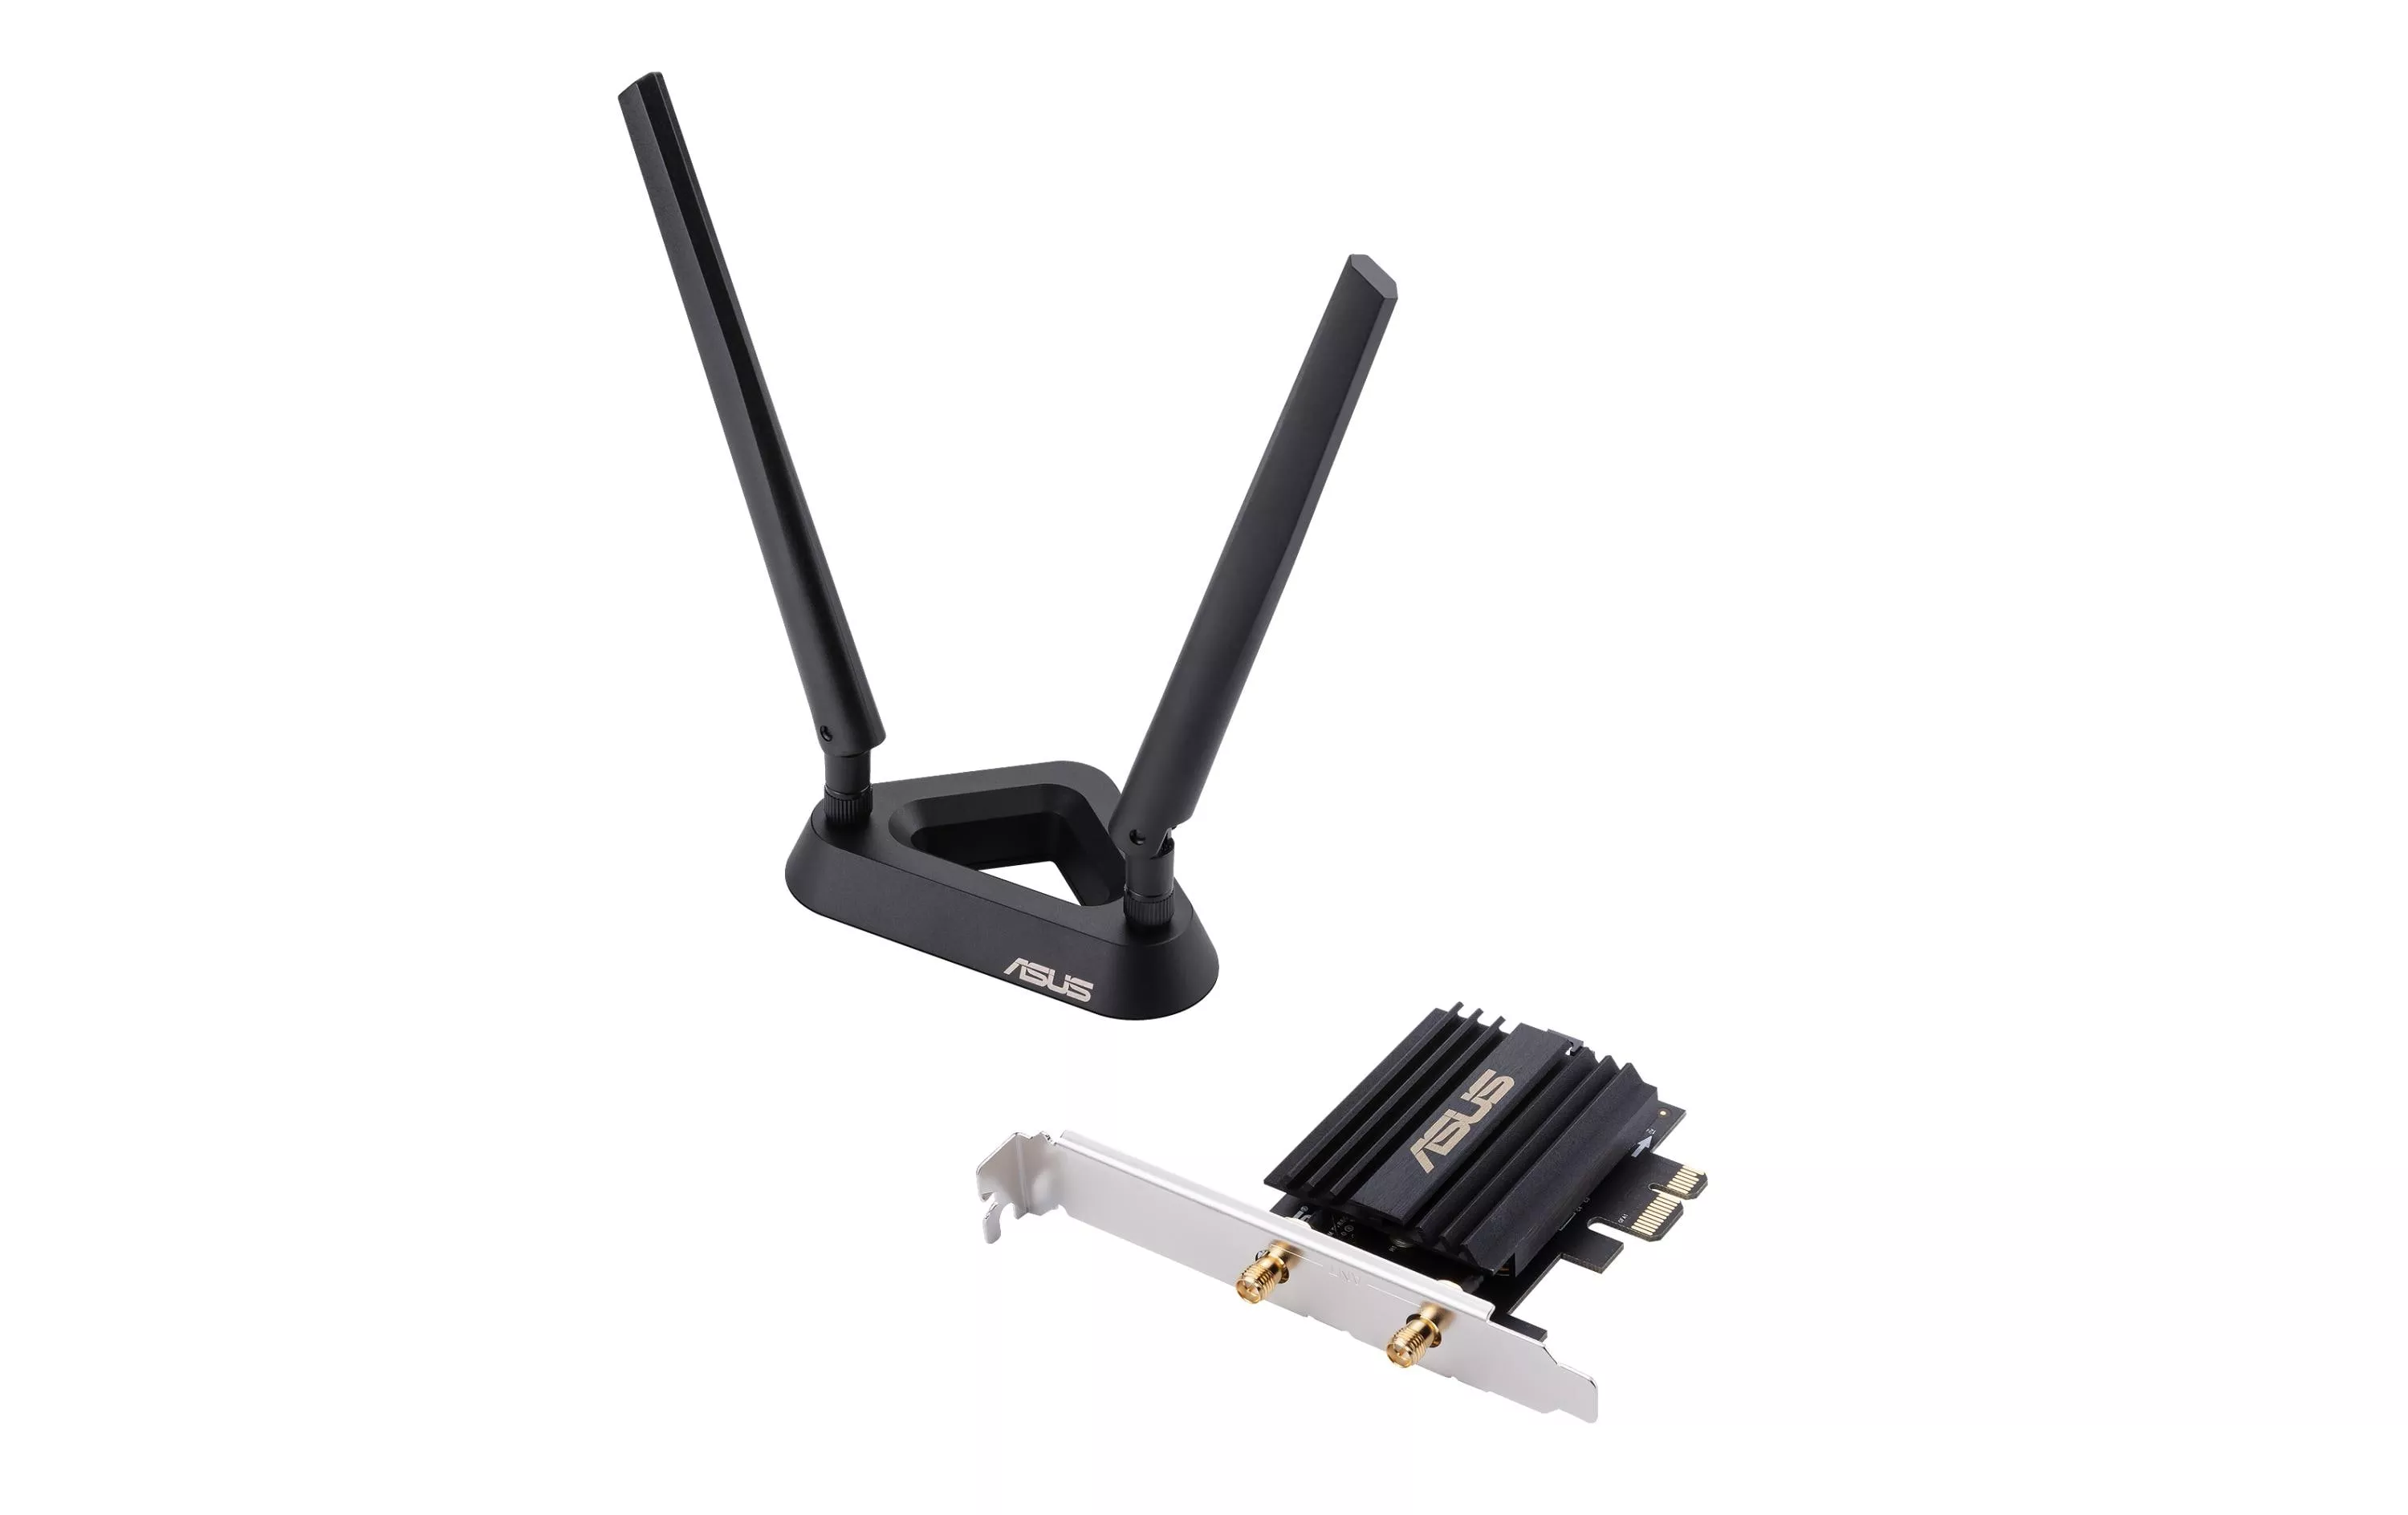 WLAN-AX PCIe Adapter PCE-AX58BT con Bluetooth 5.0